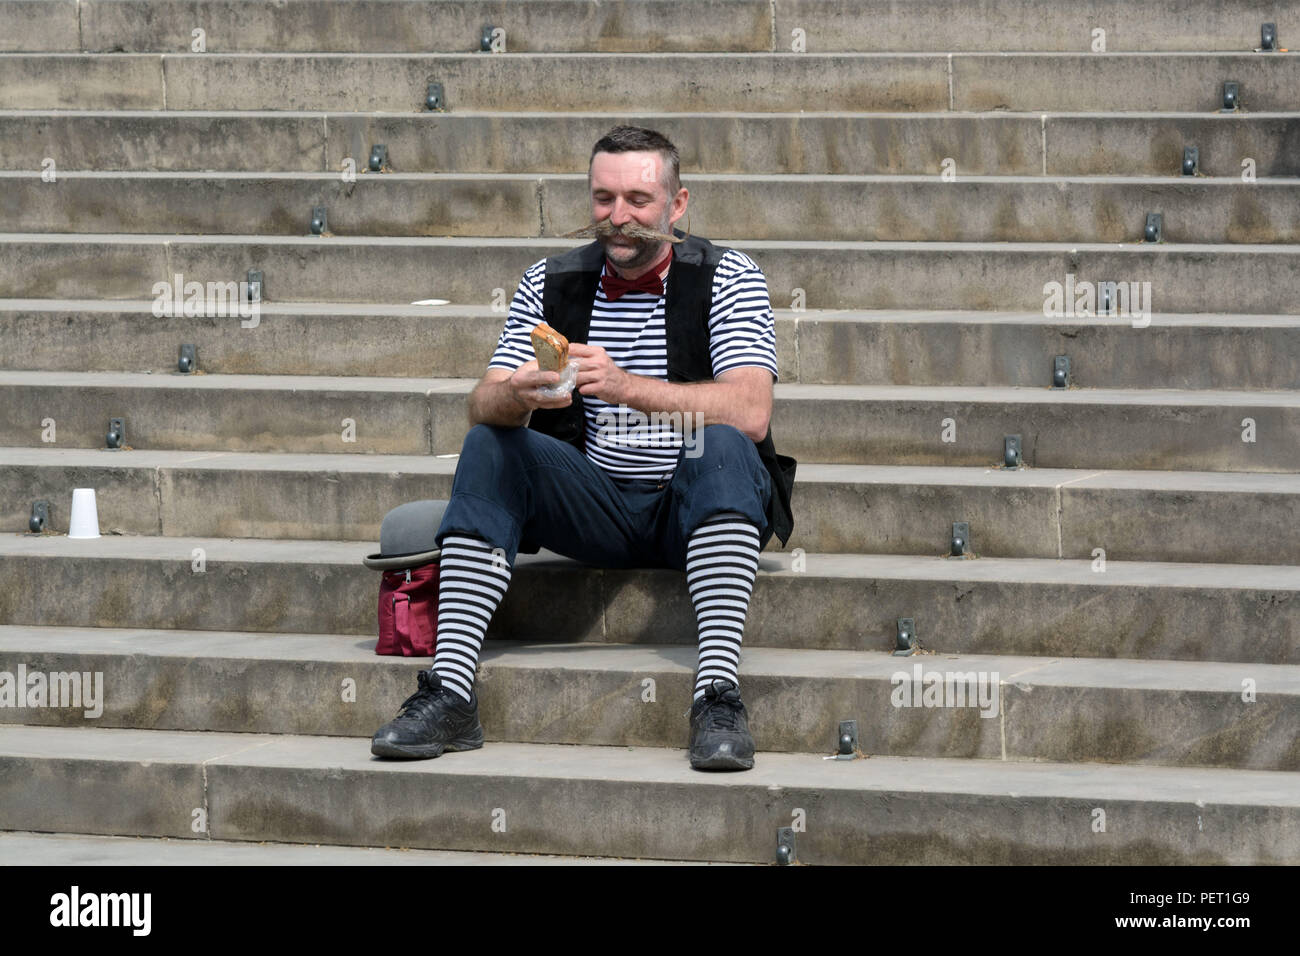 Freudiger Mann mittleren Alters in gestreifter Clown Kostüm sitzt auf der Treppe der Vorbereitung einer sandvich zu essen Stockfoto